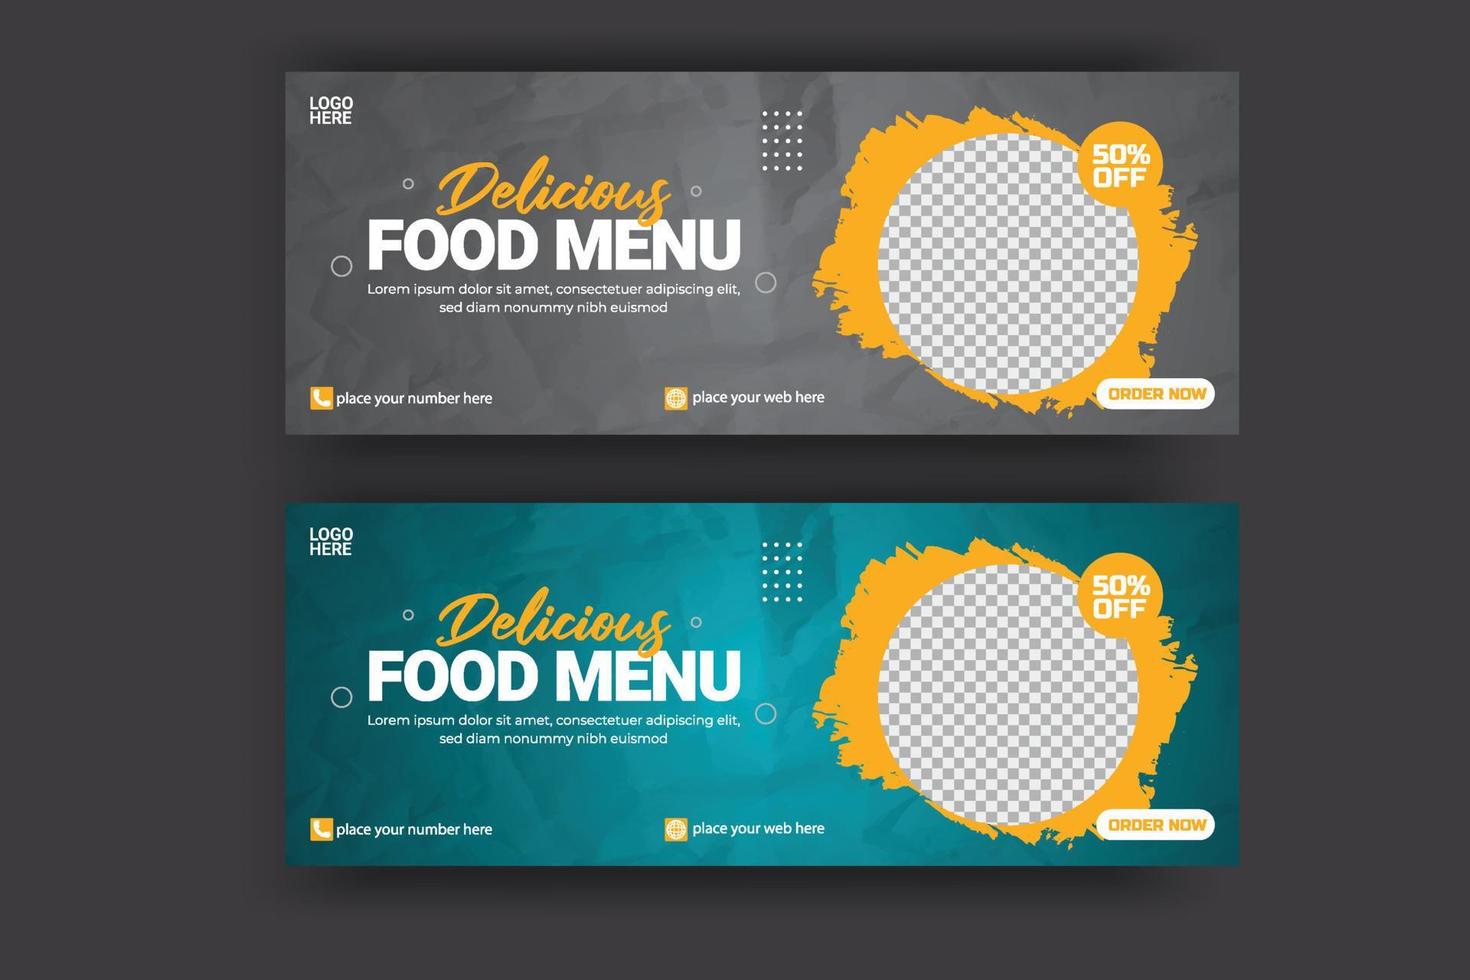 banner de portada de redes sociales publicidad de alimentos plantilla de oferta de venta de descuento diseño de publicación de portada de alimentos de redes sociales vector